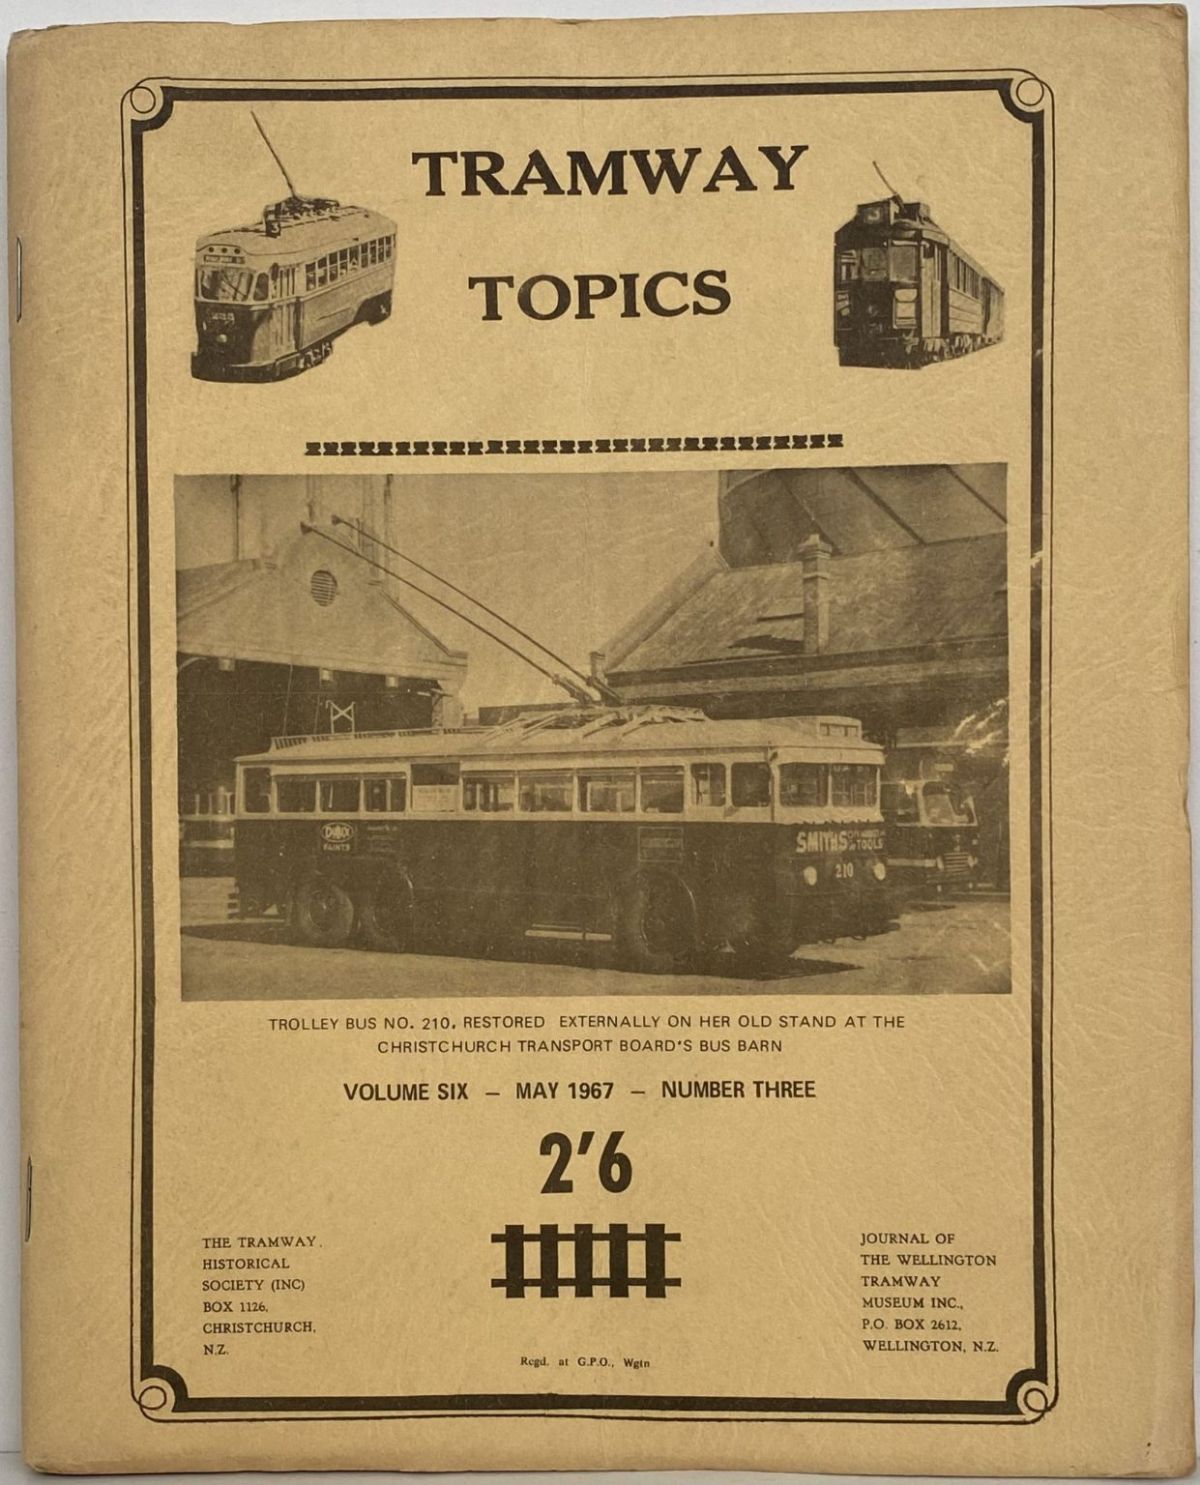 TRAMWAY TOPICS Vol 6, No 3, May 1967